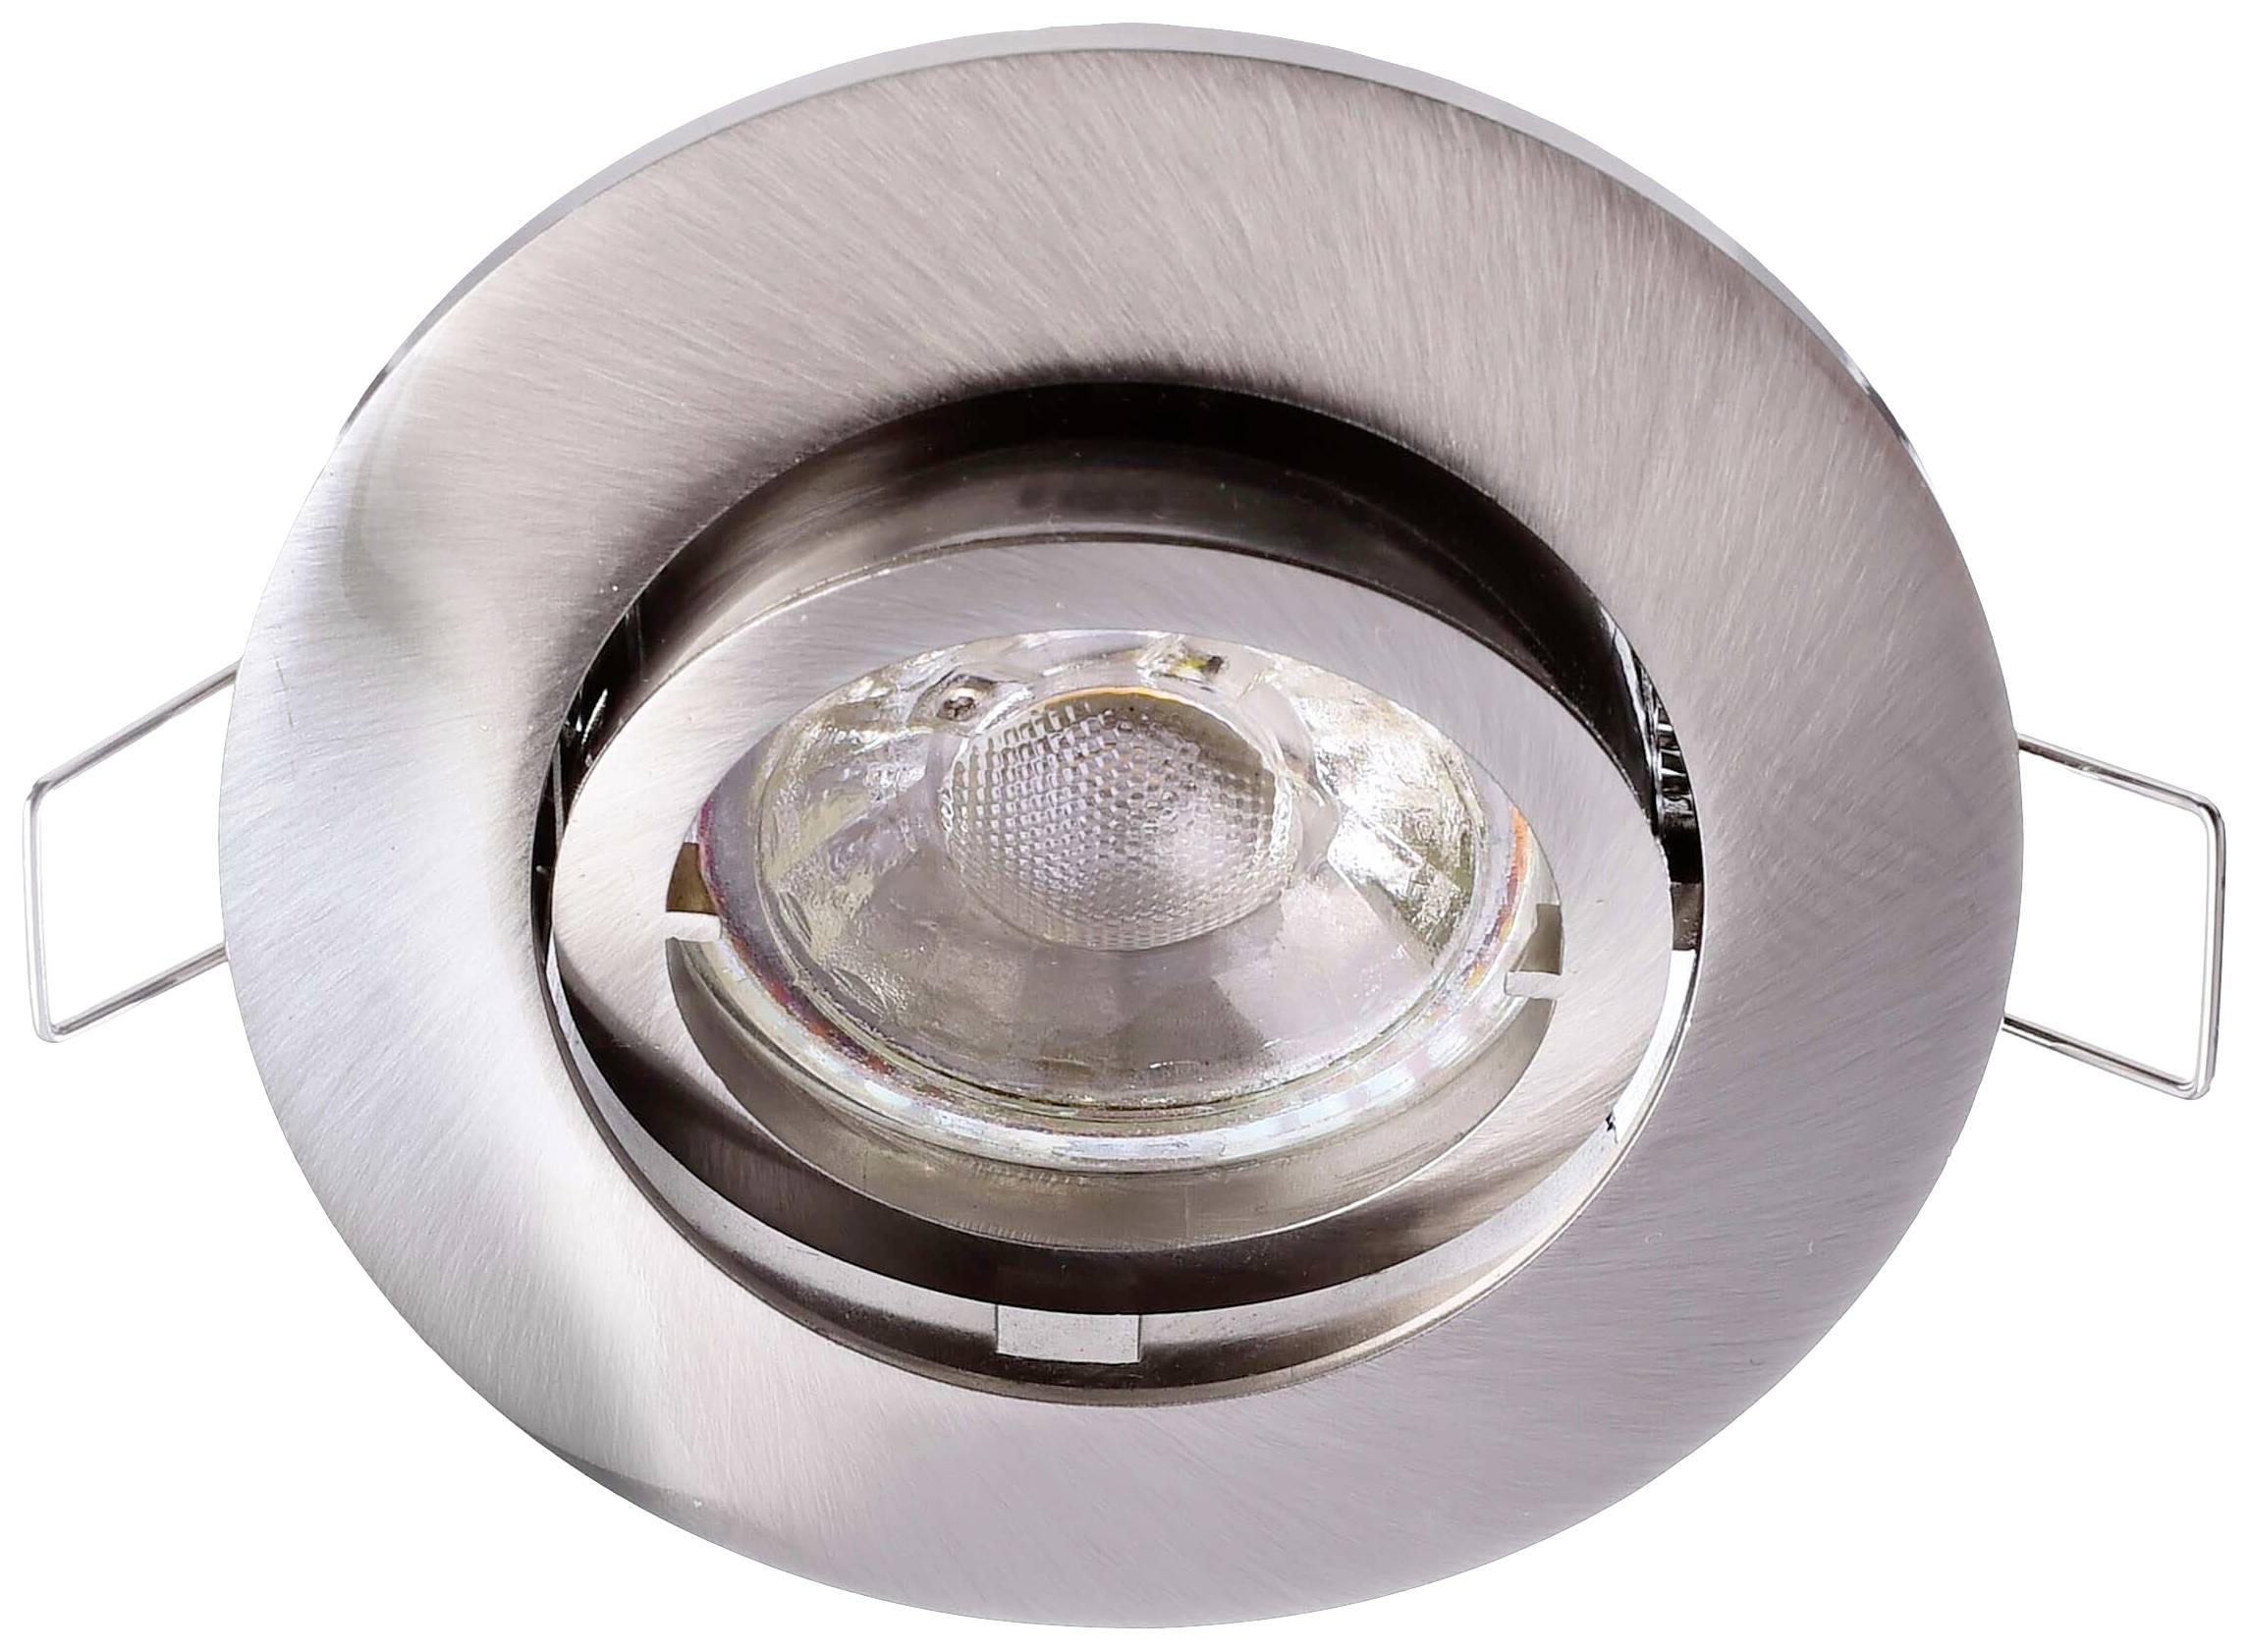 DEKO-LIGHT Deko Light Alioth 110028 Deckeneinbauring LED, Halogen GU5.3, MR 16 35 W Silber